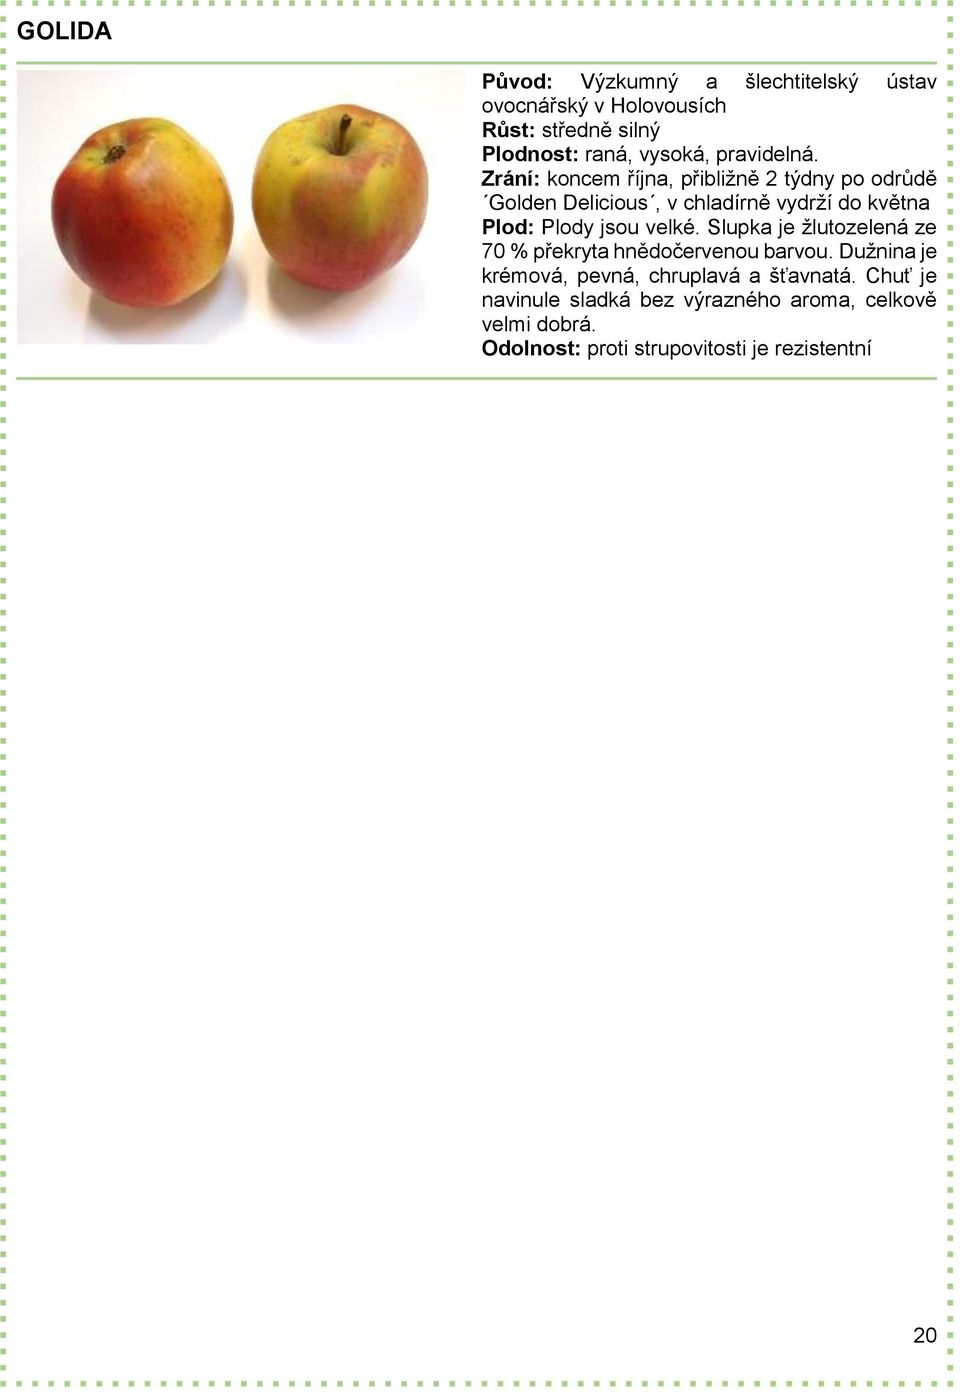 Plod: Plody jsou velké. Slupka je žlutozelená ze 70 % překryta hnědočervenou barvou.